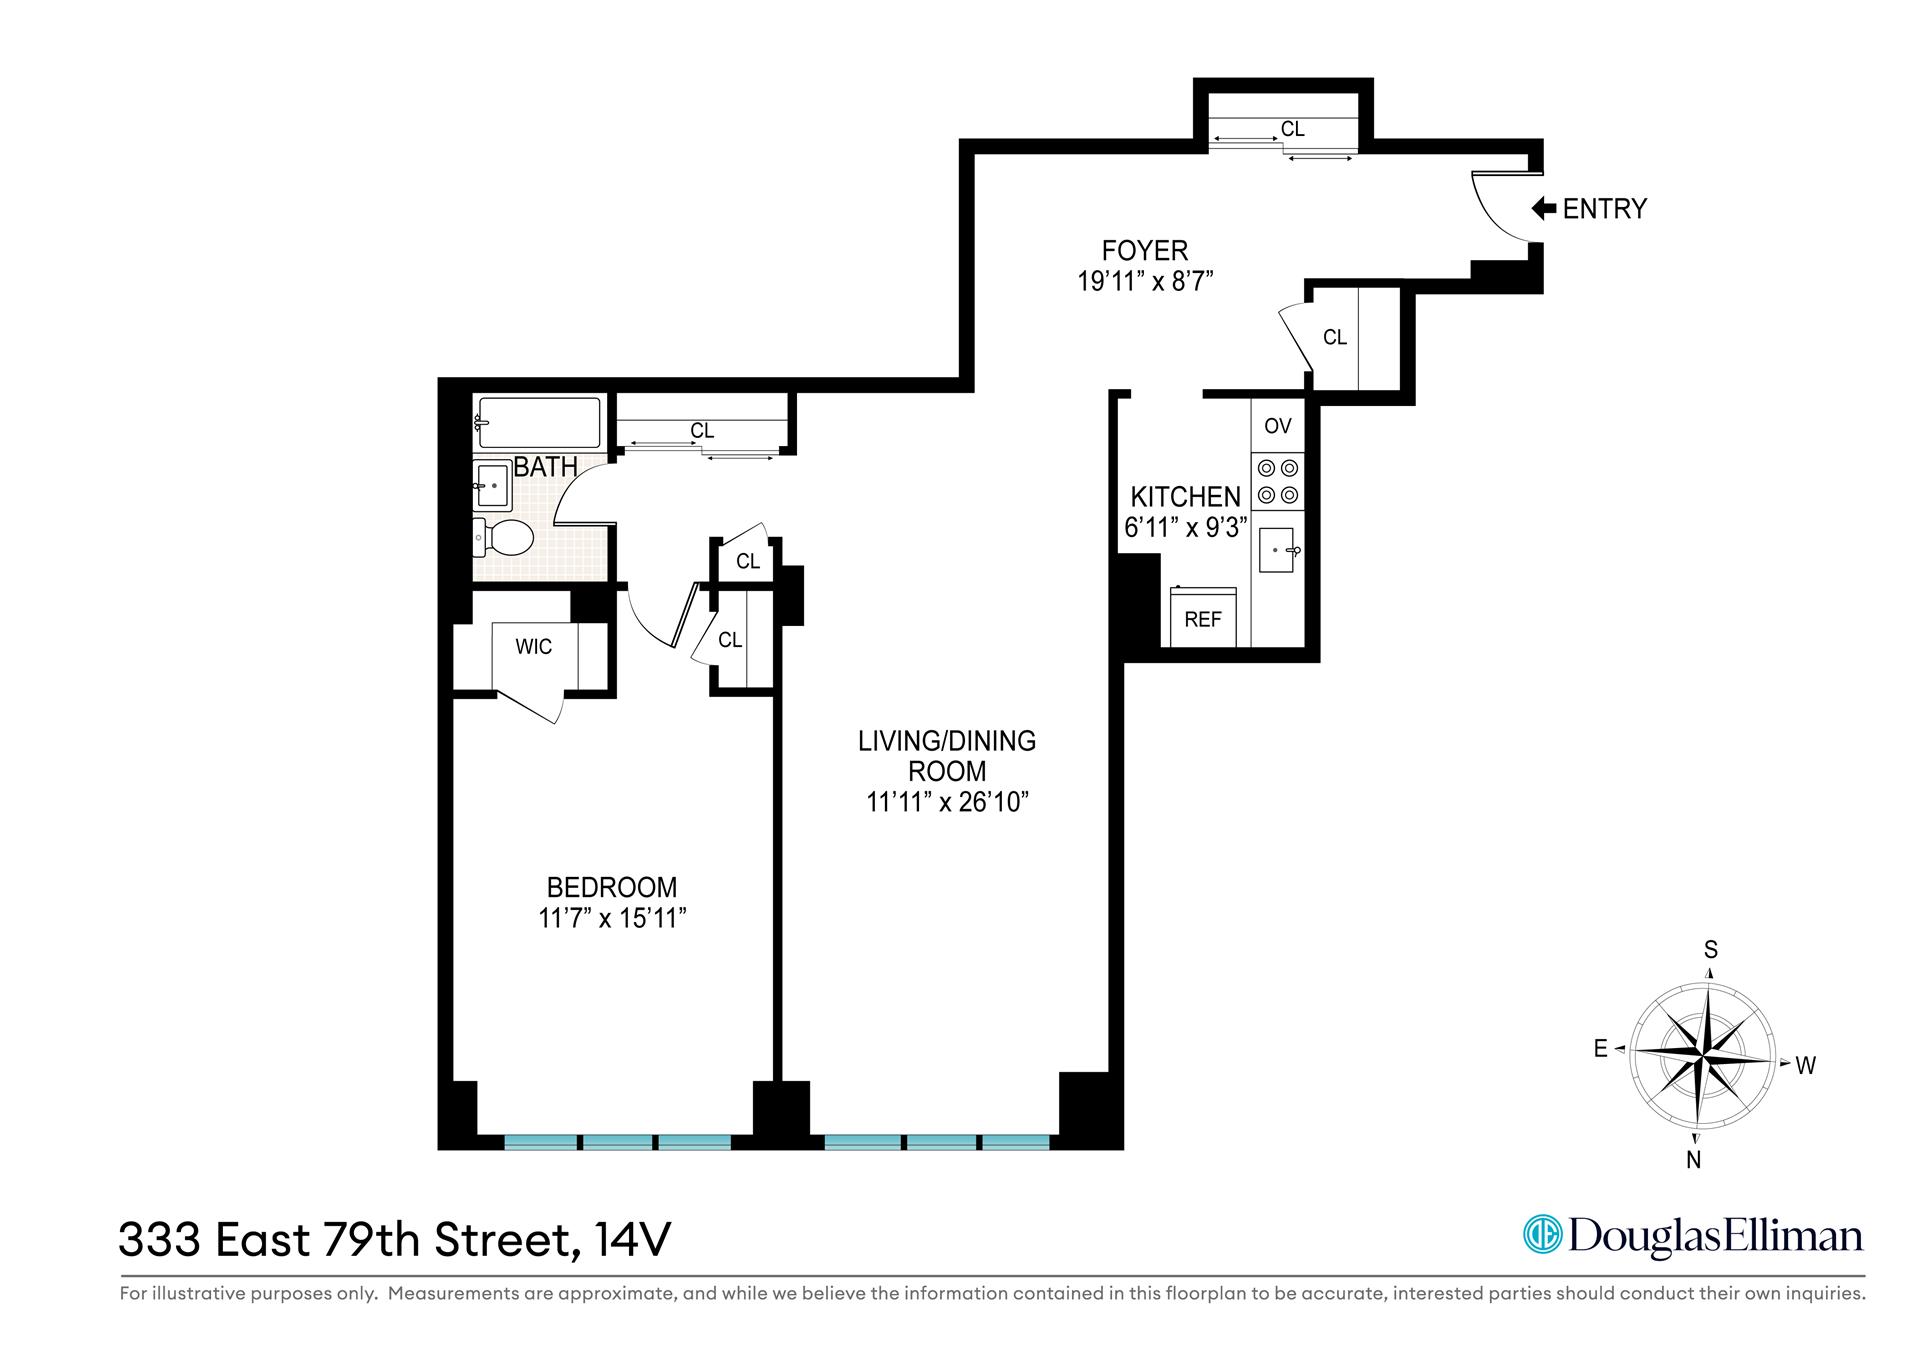 Floorplan for 333 East 79th Street, 14V